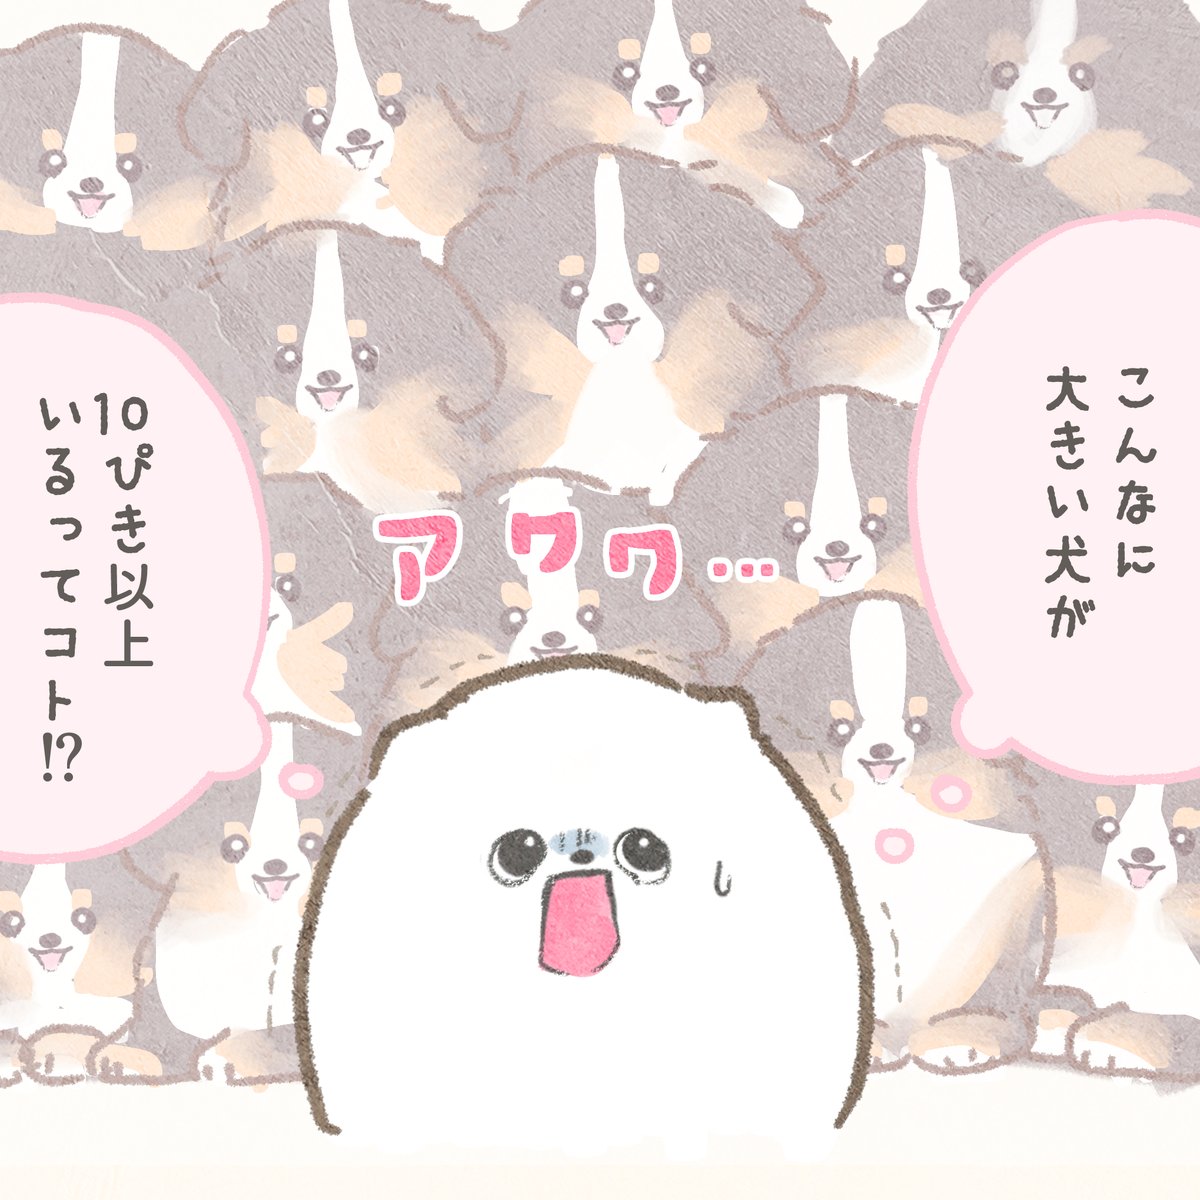 4コマ漫画「犬シール」 #ぽぽちとぱぴち